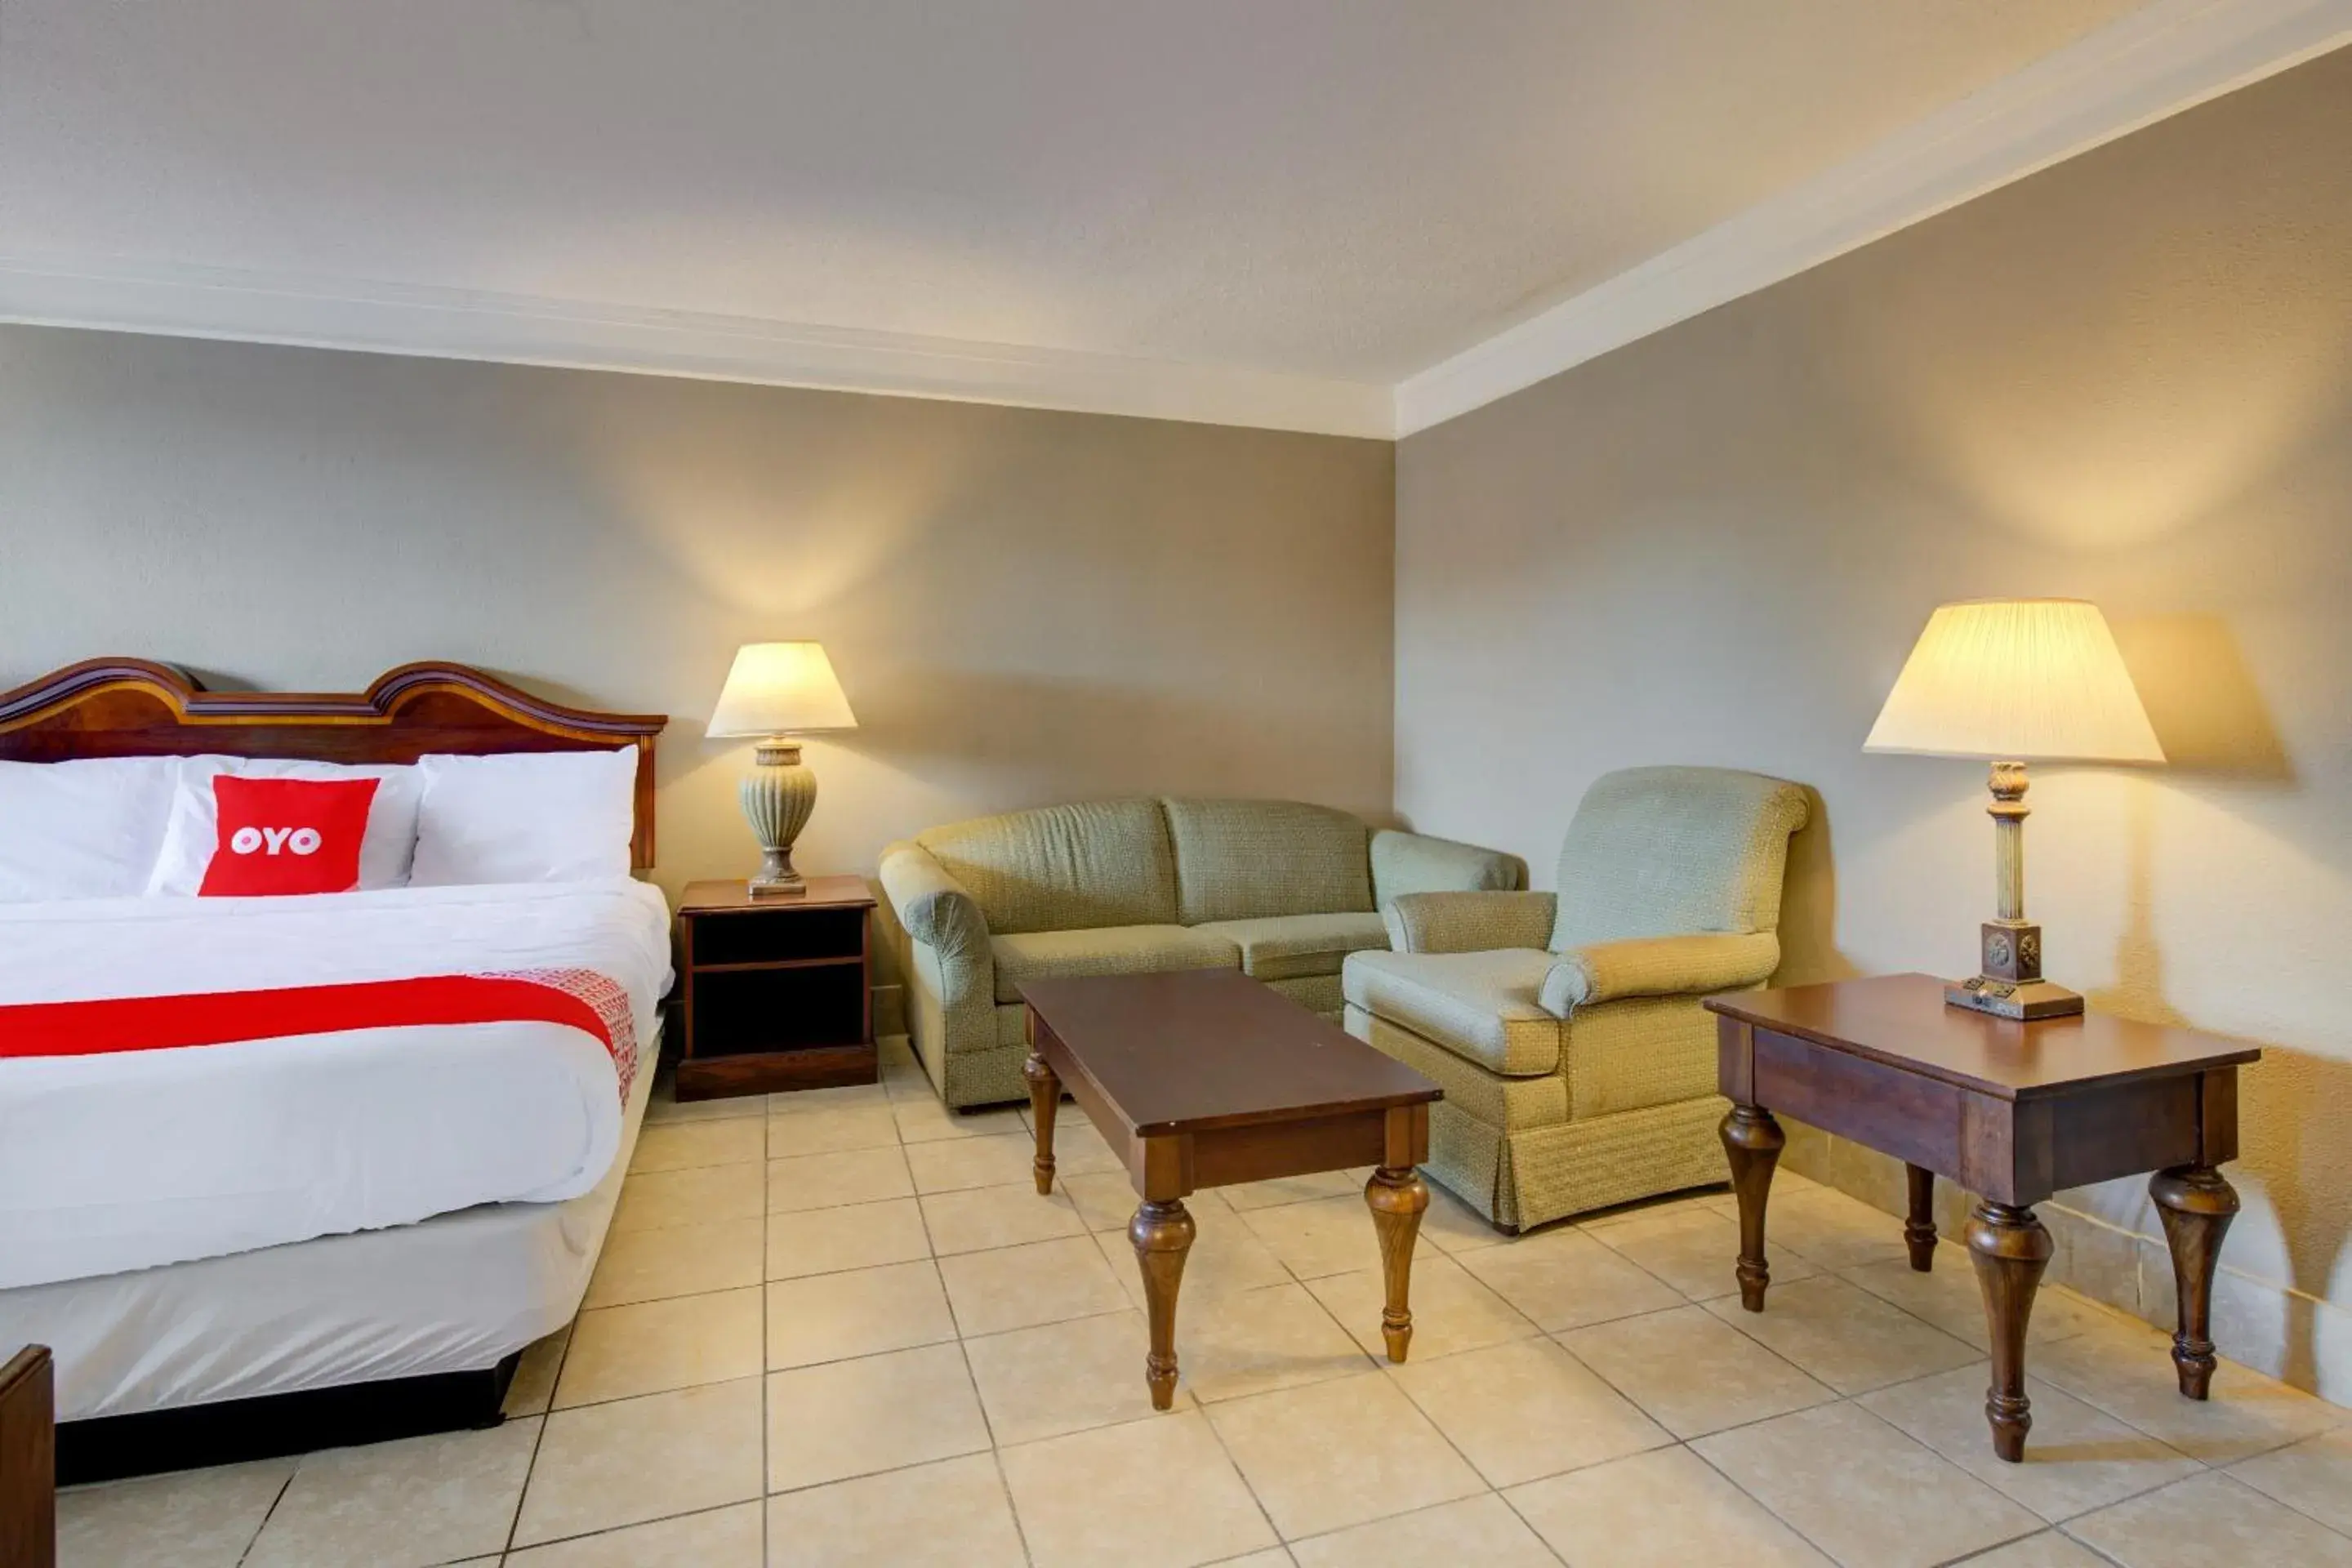 Bedroom in OYO Hotel Douglas GA US-441